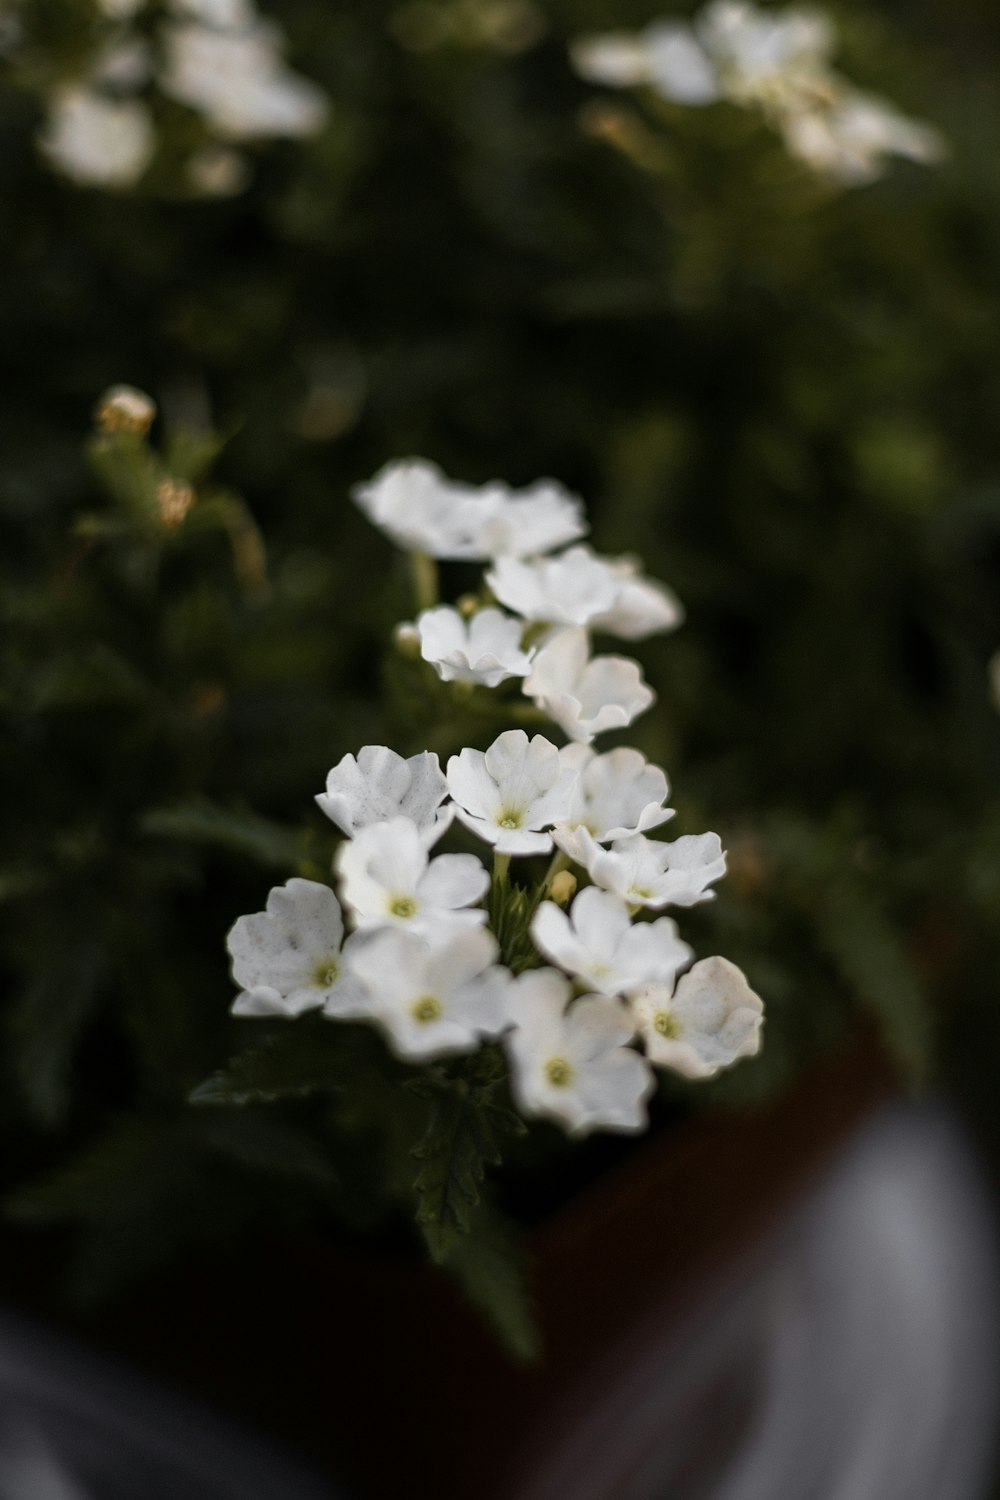 pequenas flores brancas em um vaso sobre uma mesa